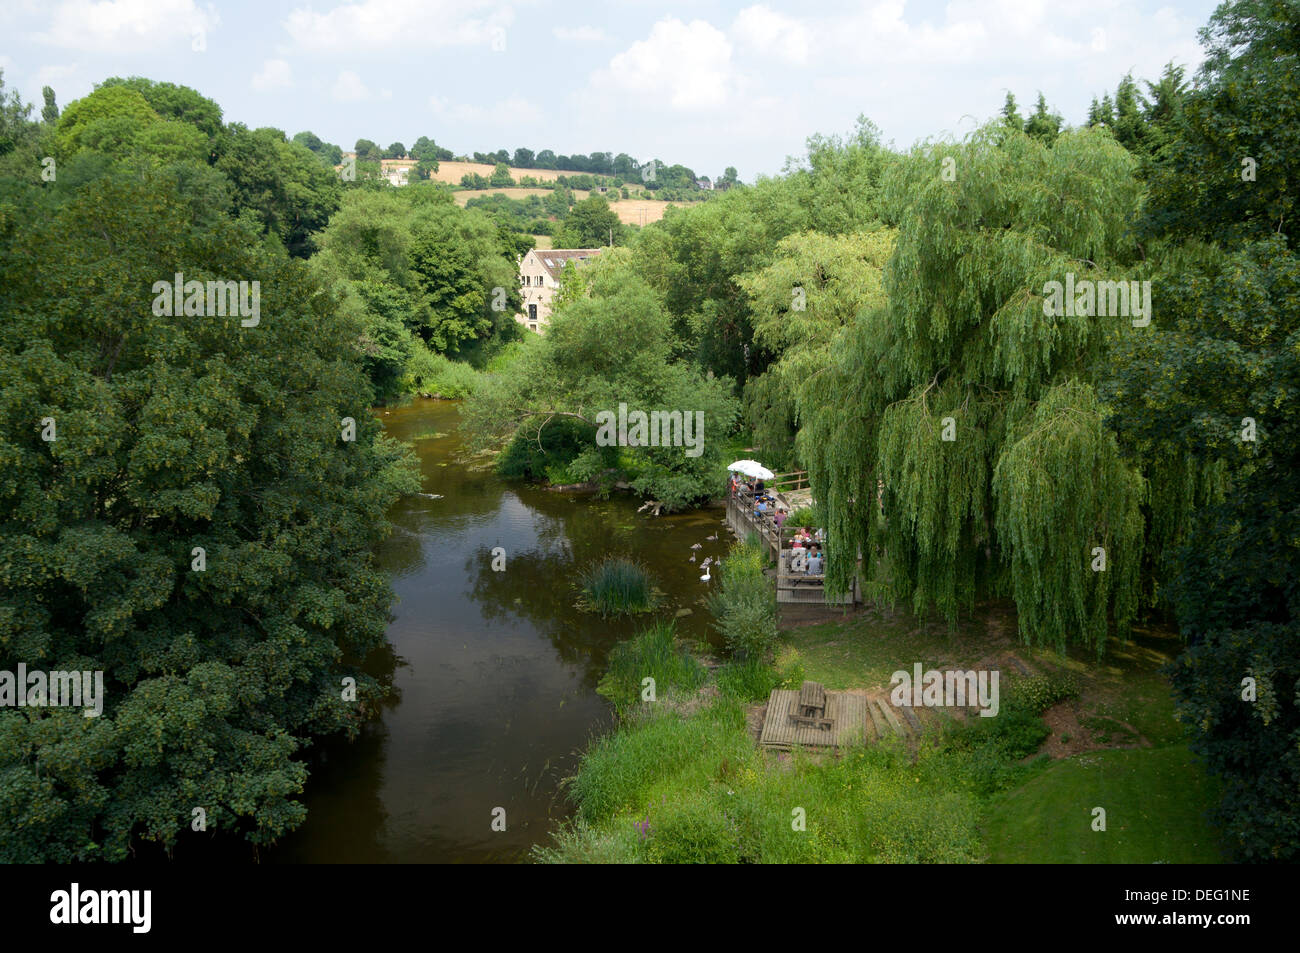 River Avon, Avoncliff near Bradford on Avon, Wiltshire, England. Stock Photo